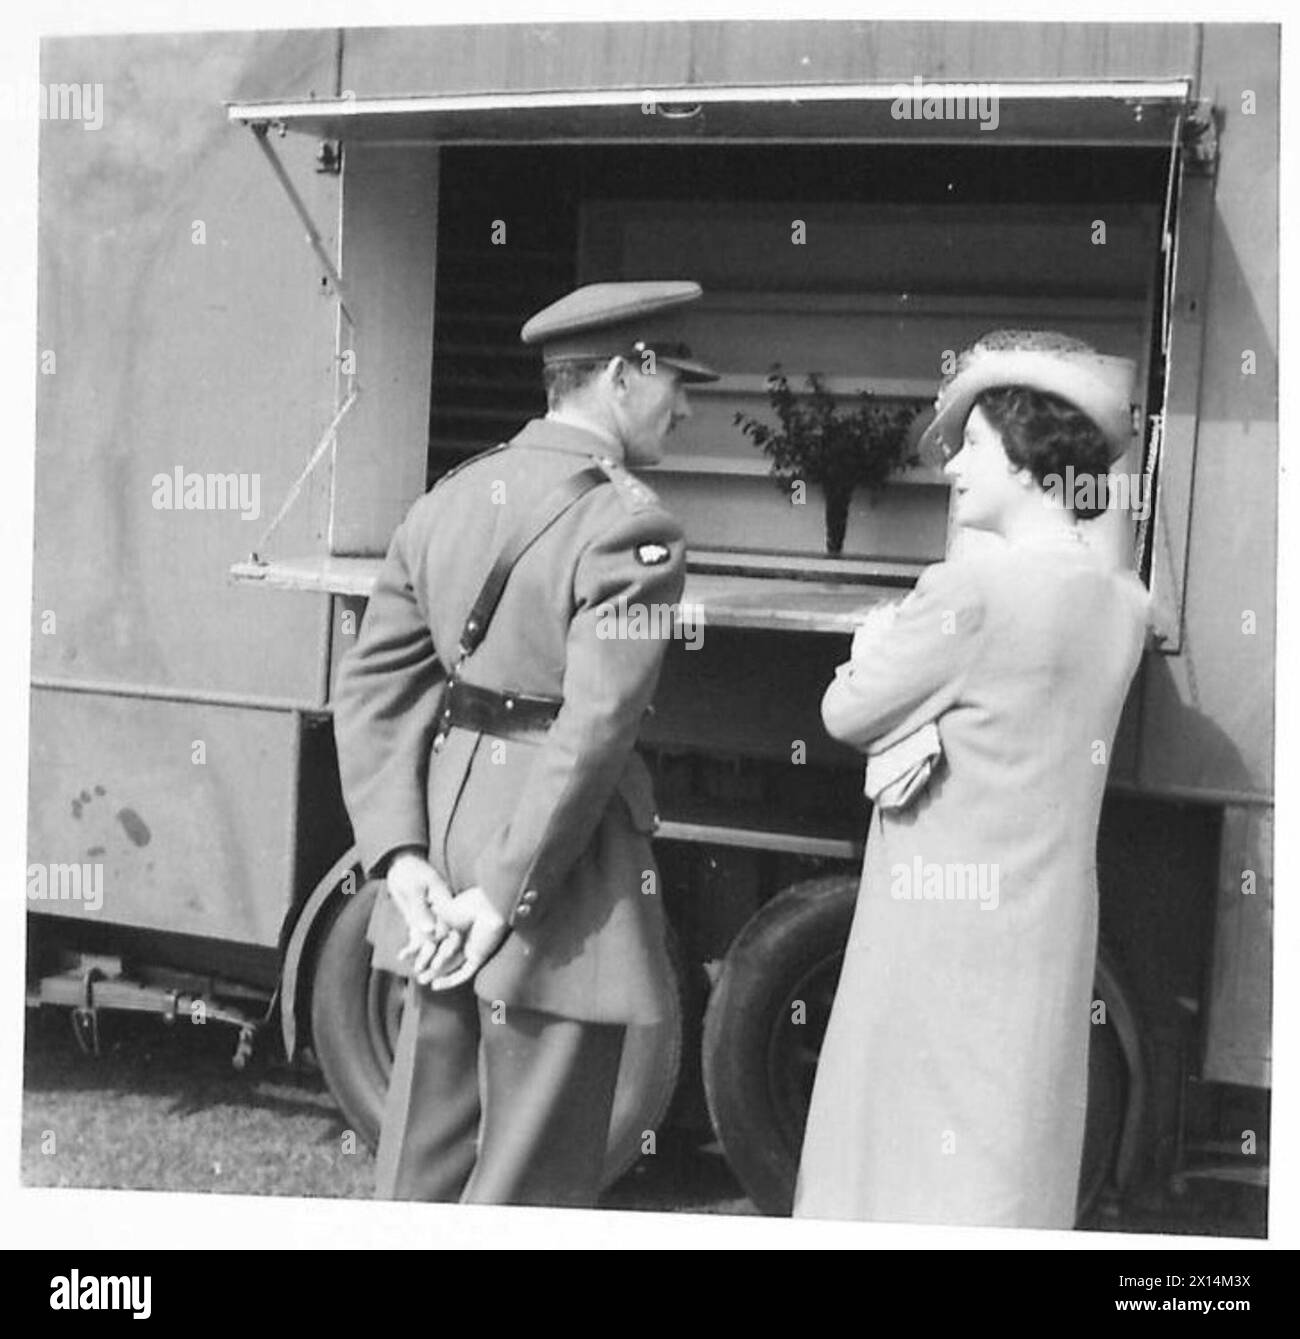 DIE KÖNIGIN INSPIZIERT die BUCHTEN DER KÖNIGIN, zusammen mit dem Oberst, eine mobile Kantine der britischen Armee Stockfoto